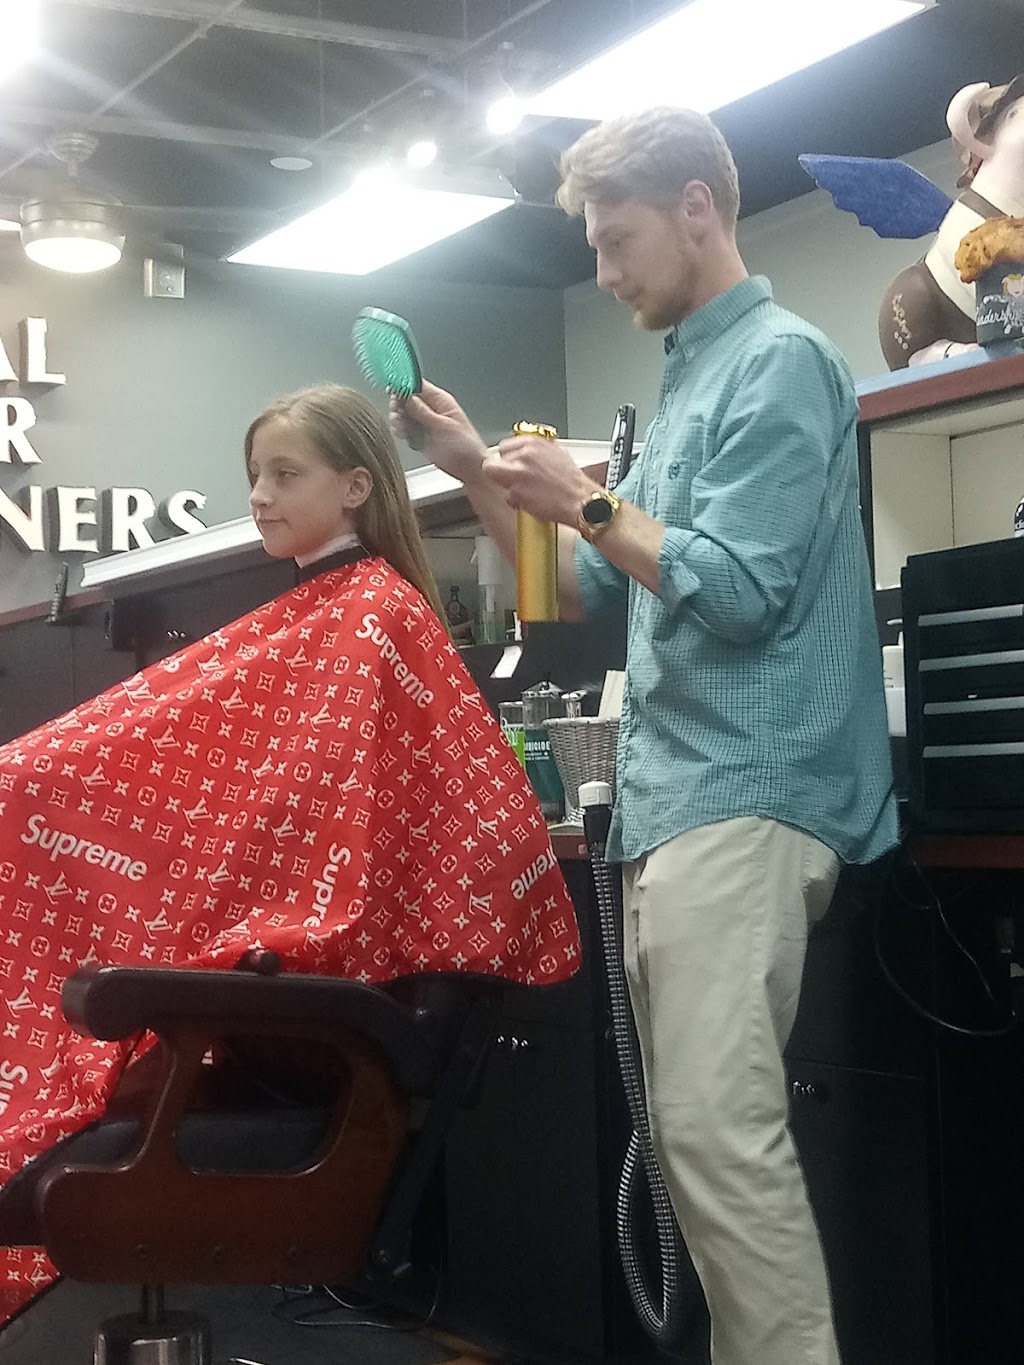 Royal Barber & Hair Designers | 8298 Clough Pike # 4, Cincinnati, OH 45244, USA | Phone: (513) 232-5222